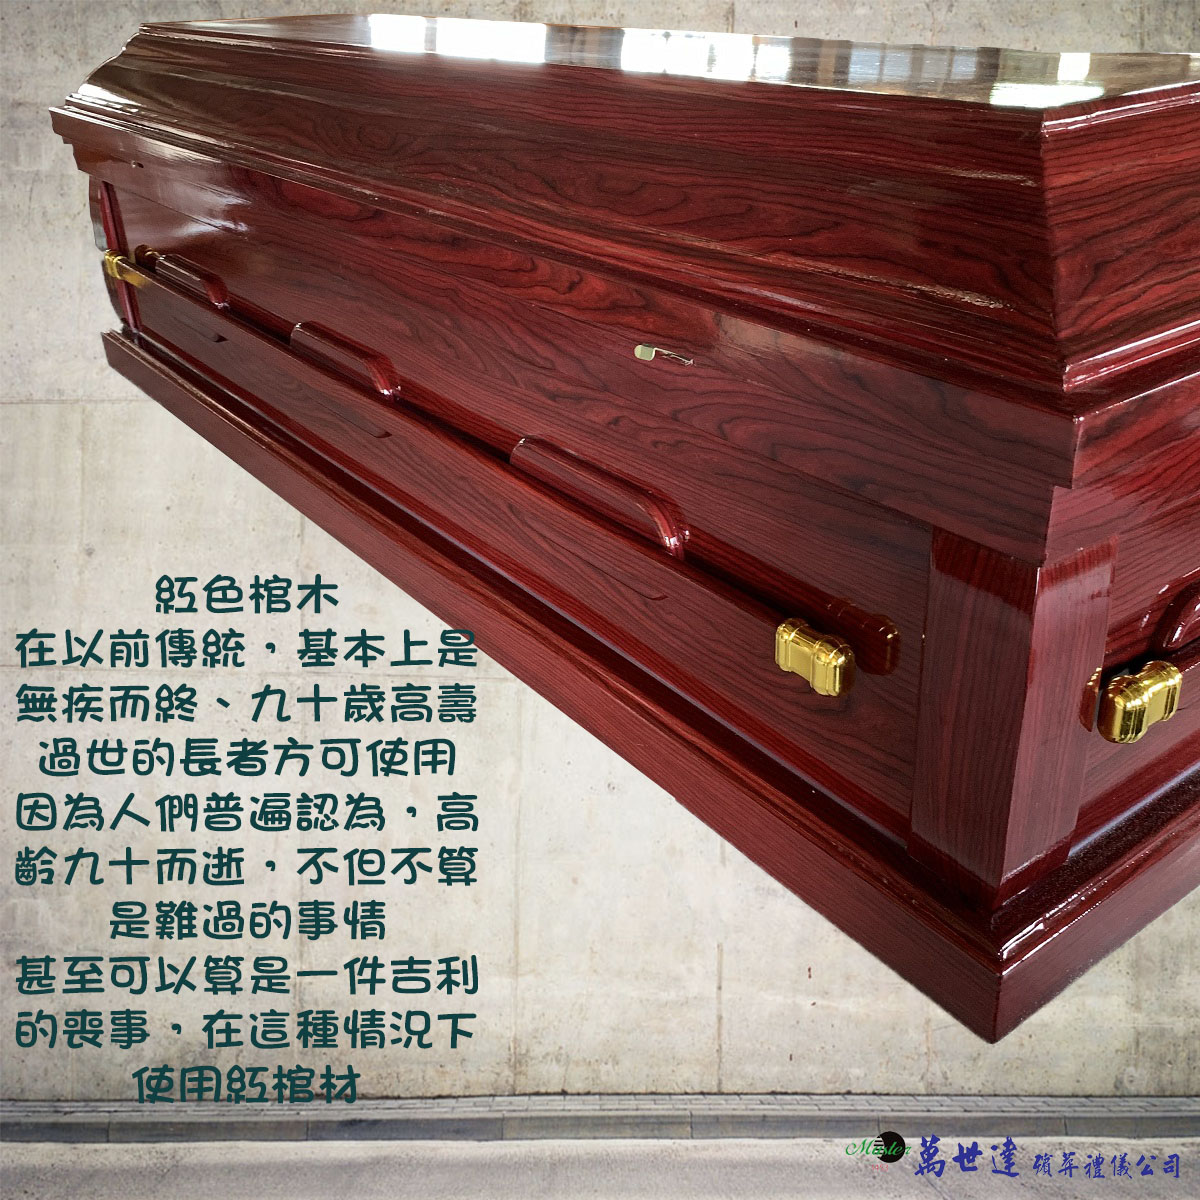 【入殮出】十字架基督天主火化平蓋紅木扶手棺2.0尺